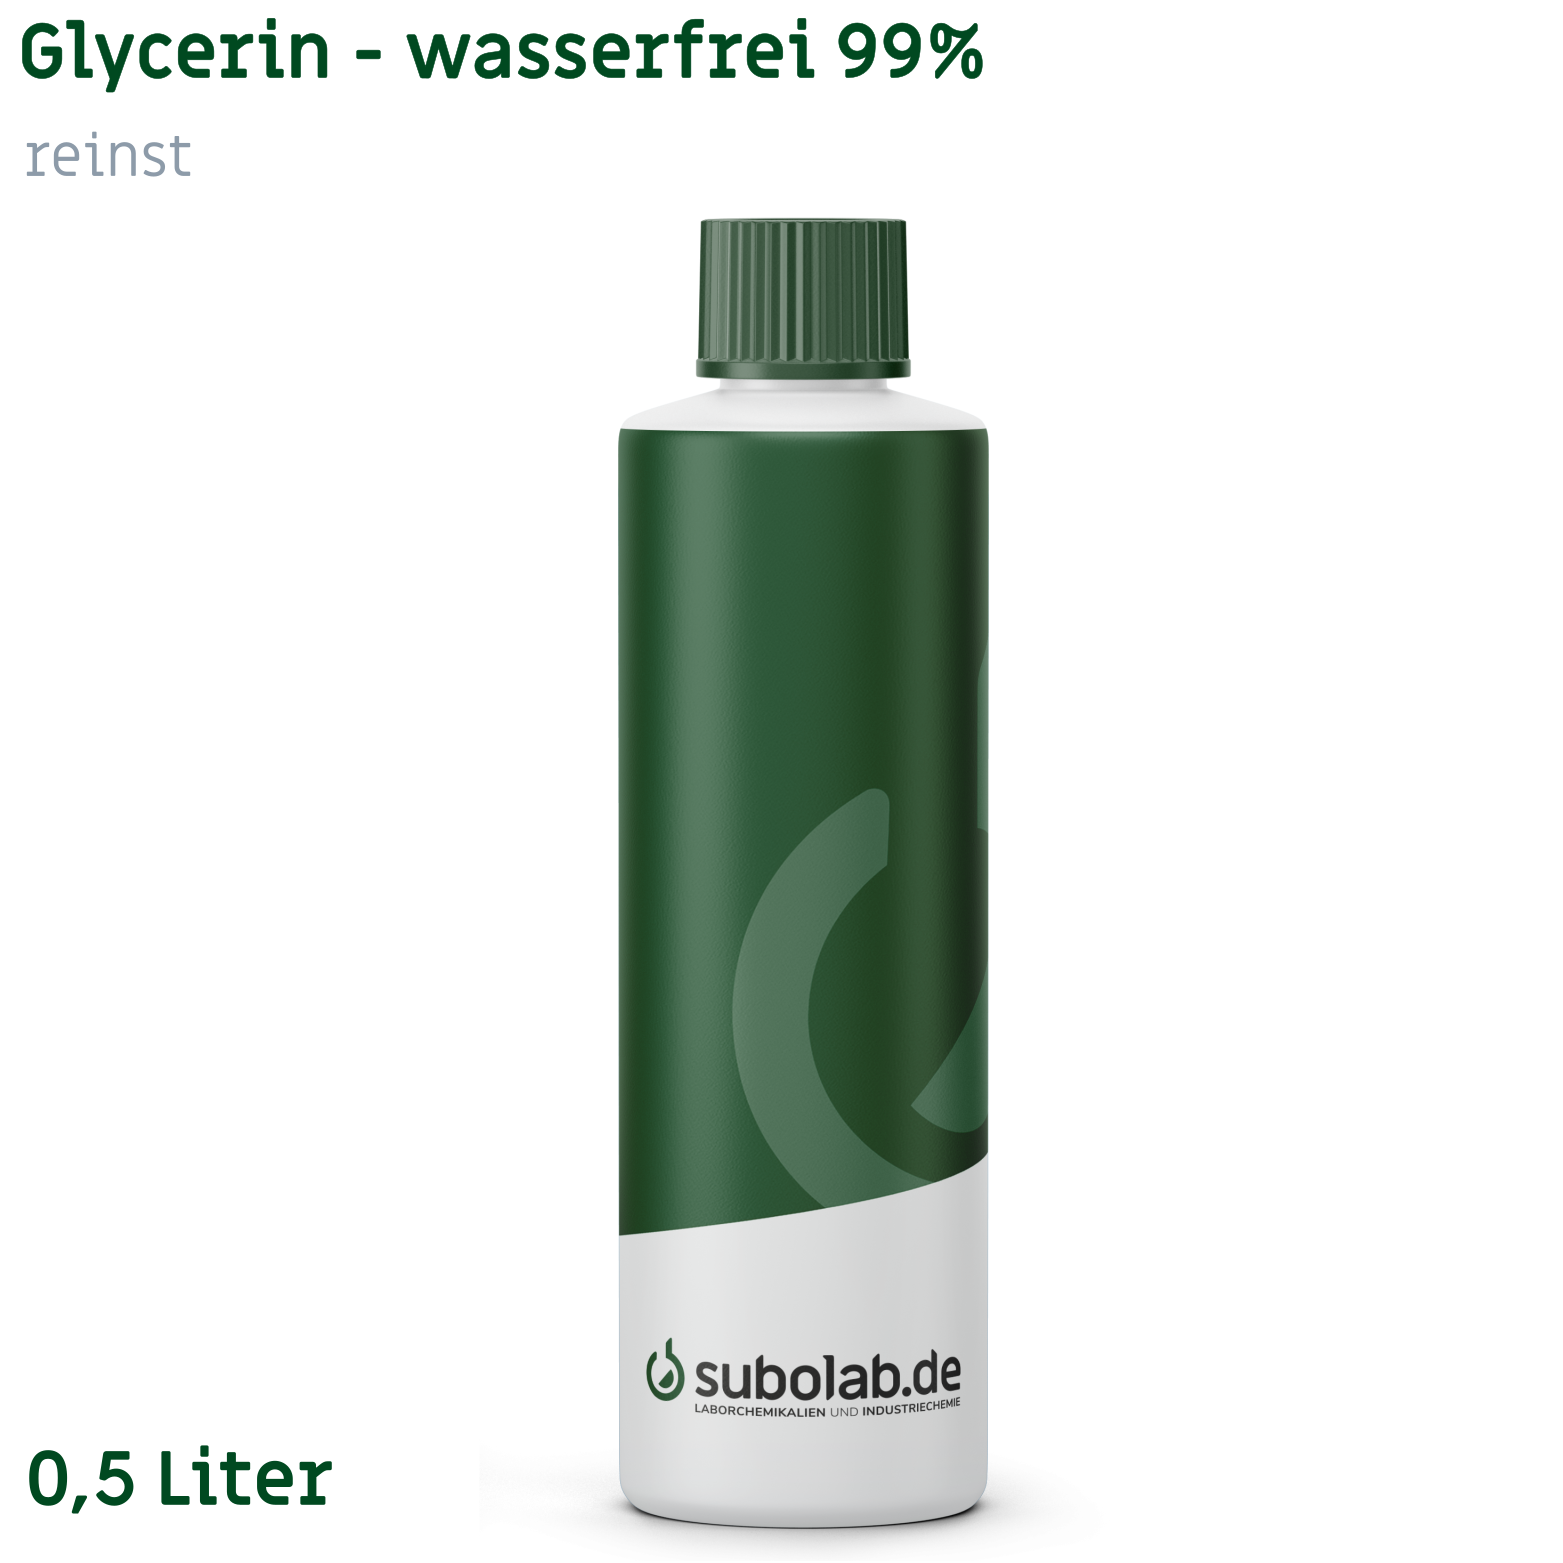 Bild von Glycerin - wasserfrei 99% reinst (0,5 Liter)